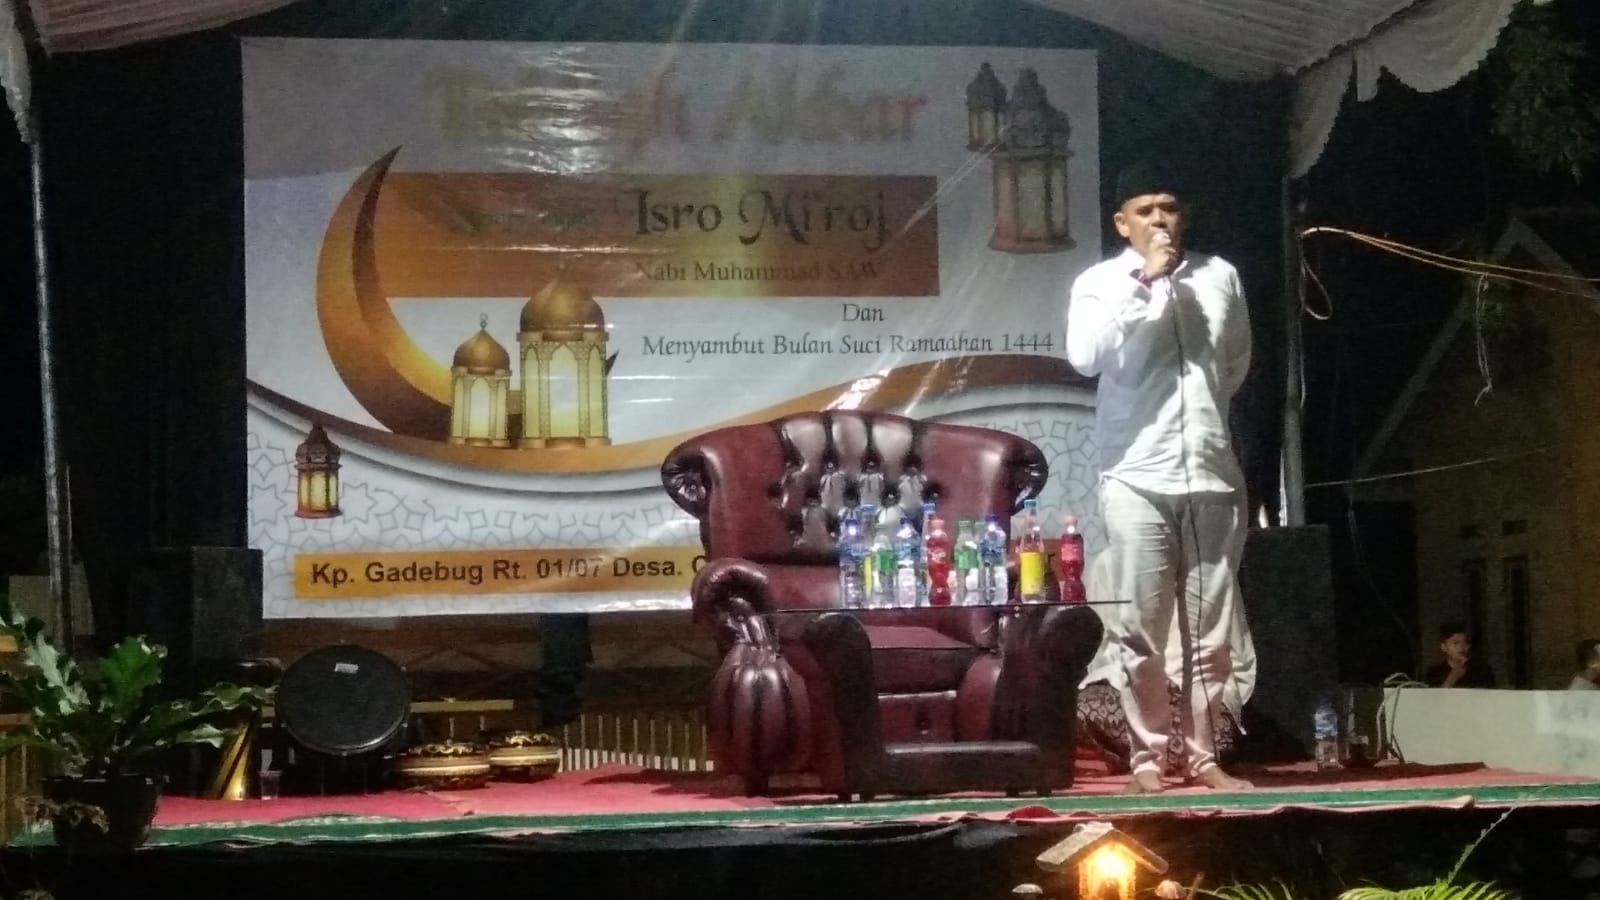 Ketua Katar Desa Cilaku Suherman Oki menghadiri Tabligh Akbar Memperingati Isro Miraj Di Kp. Gedebug.